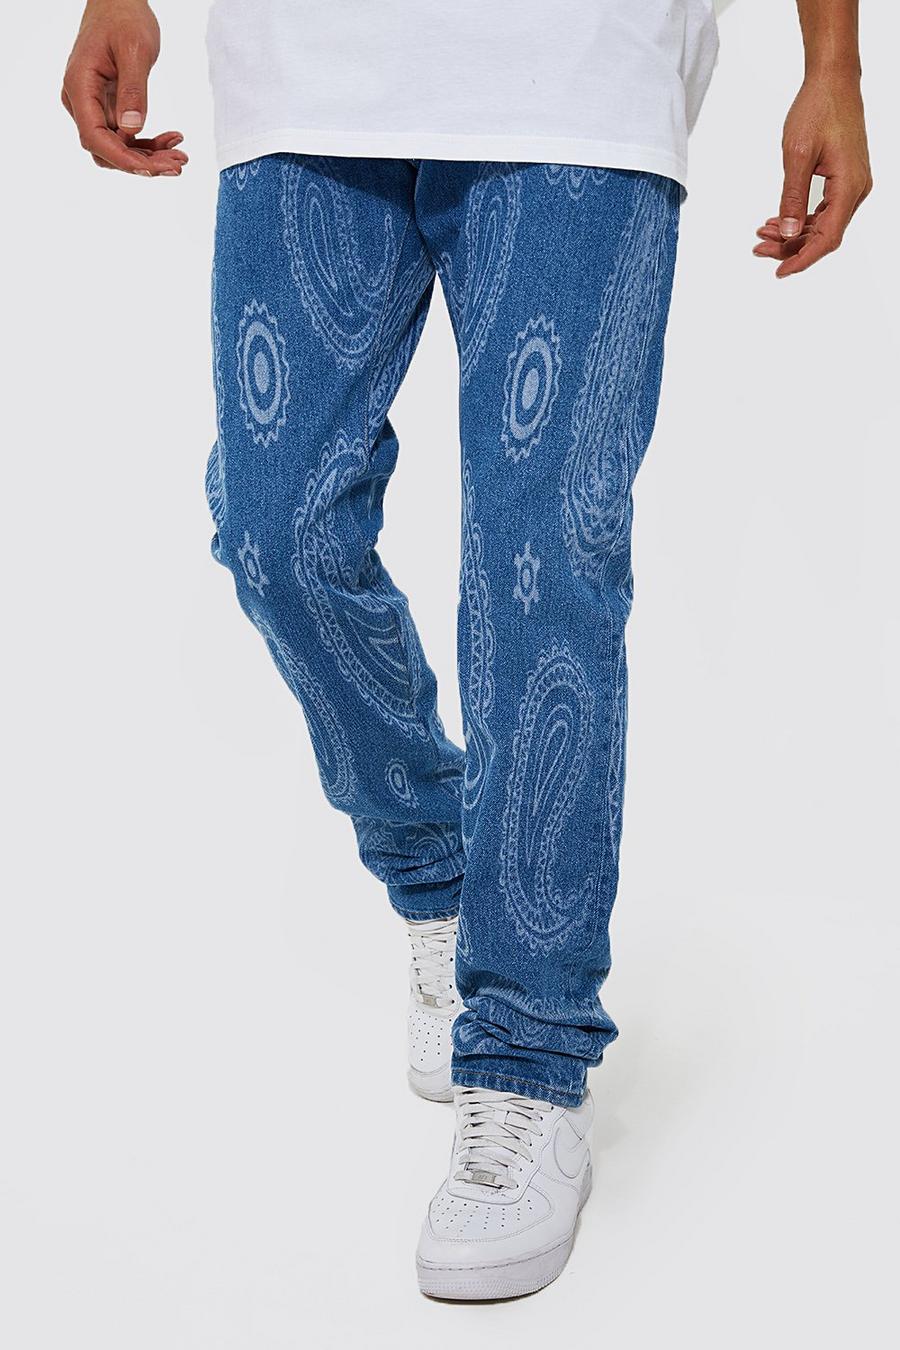 Blue azul ג'ינס קשיח בגזרה צרה עם הדפס לייזר פייזלי, לגברים גבוהים